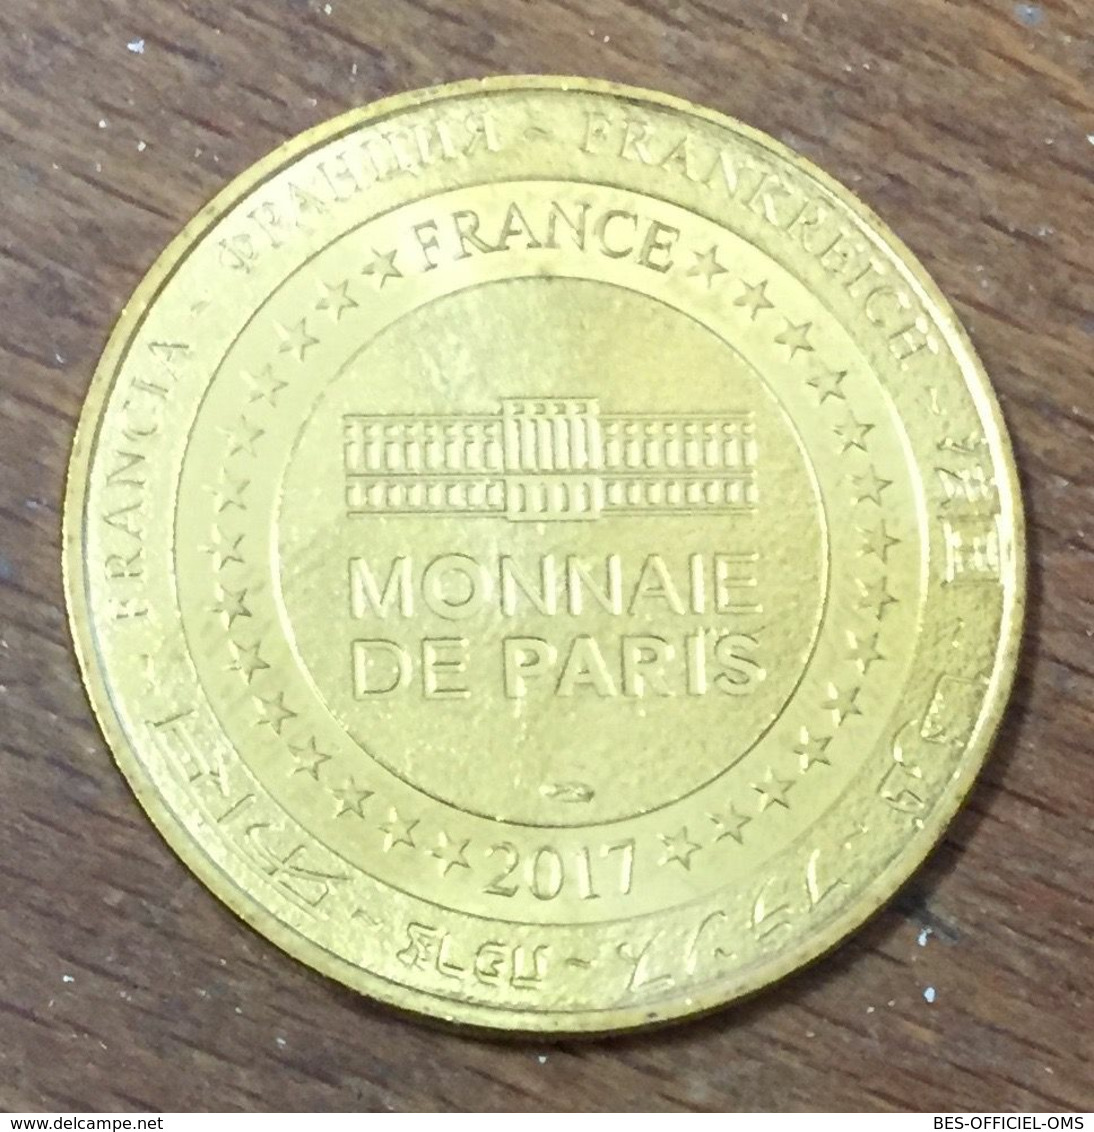 98 MONACO MUSÉE OCÉANOGRAPHIQUE N°2 LA FAÇADE MDP 2017 MÉDAILLE MONNAIE DE PARIS JETON TOURISTIQUE MEDALS TOKENS COINS - 2017